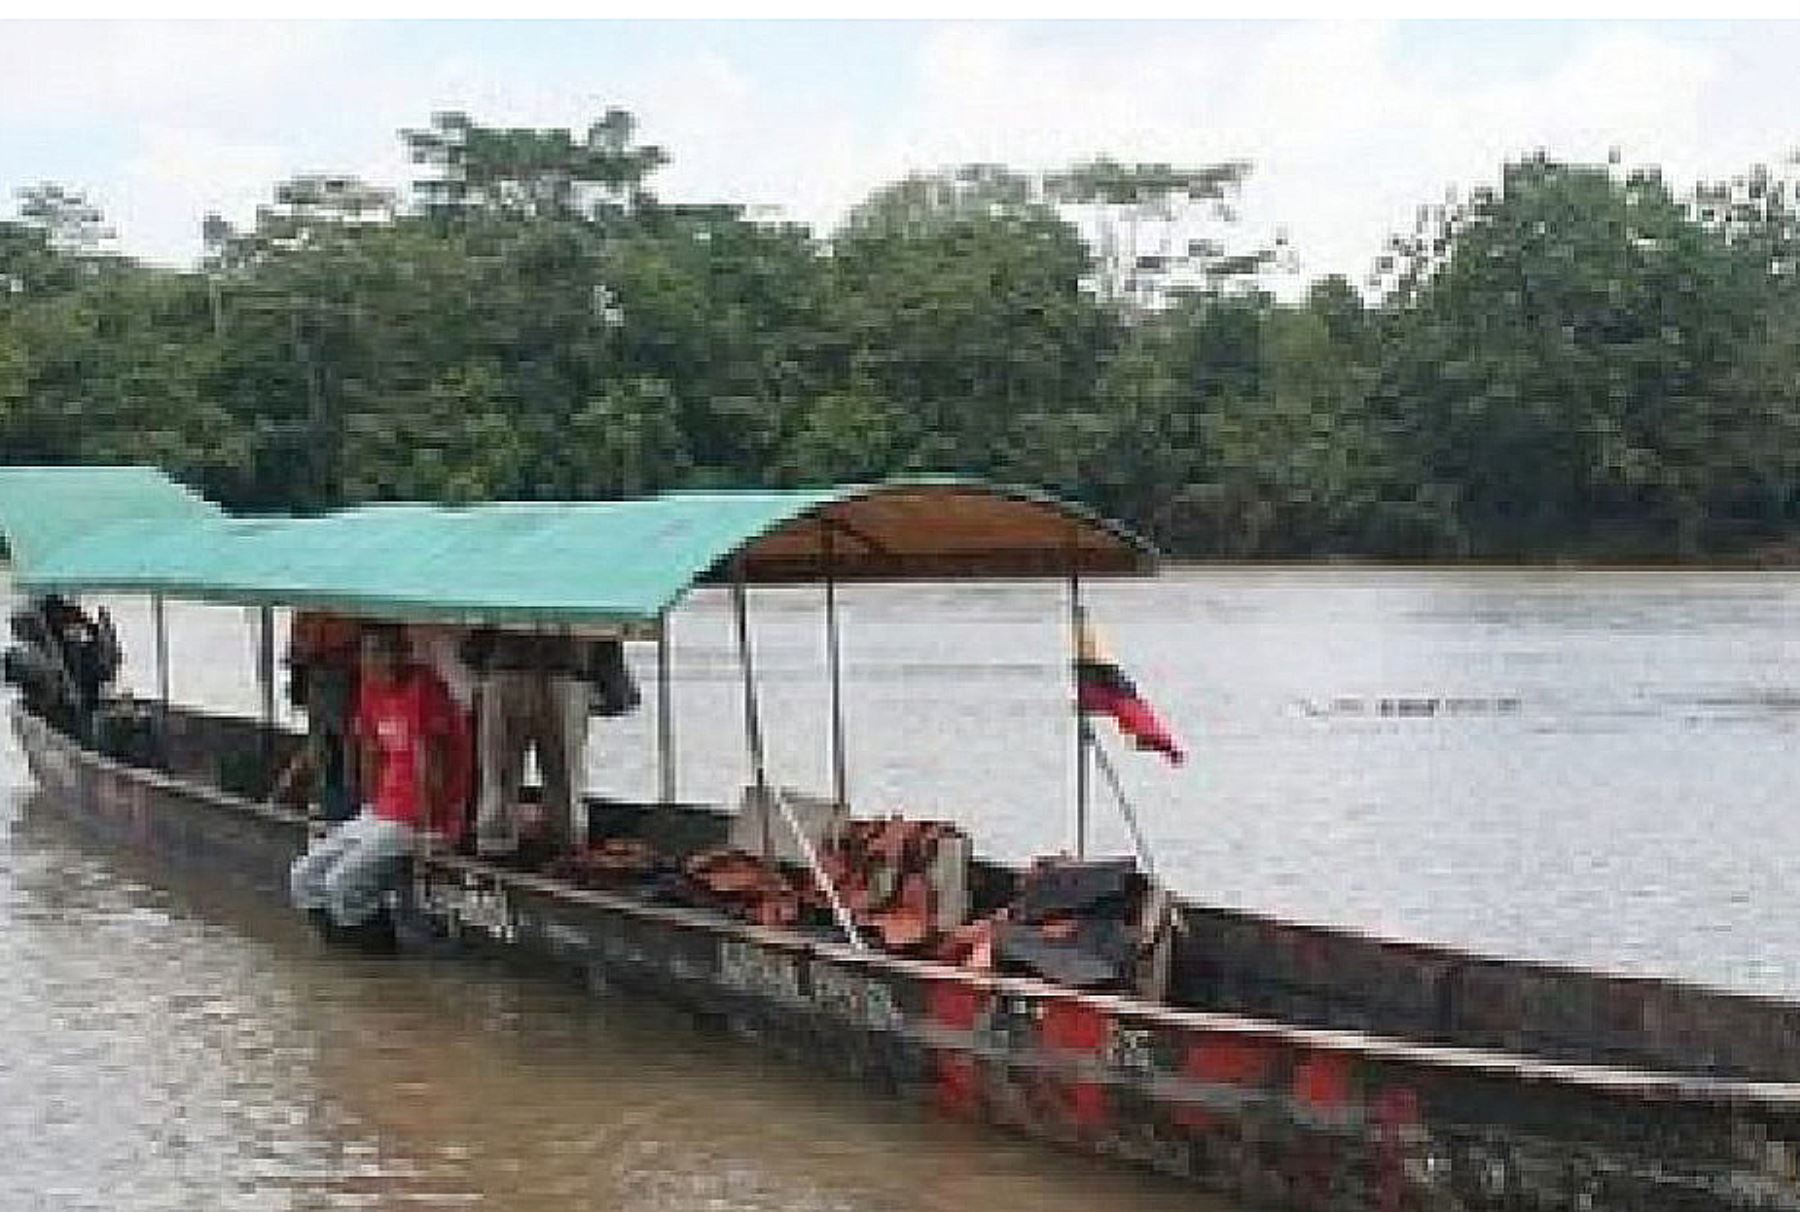 El río Ucayali se encuentra muy cerca de alcanzar la alerta roja con peligro de vaciante, debido a la ausencia de lluvias en su cuenca, por lo que viene presentando bajas considerables en sus niveles de agua, informó el Servicio Nacional de Meteorología e Hidrología (Senamhi). ANDINA/Difusión